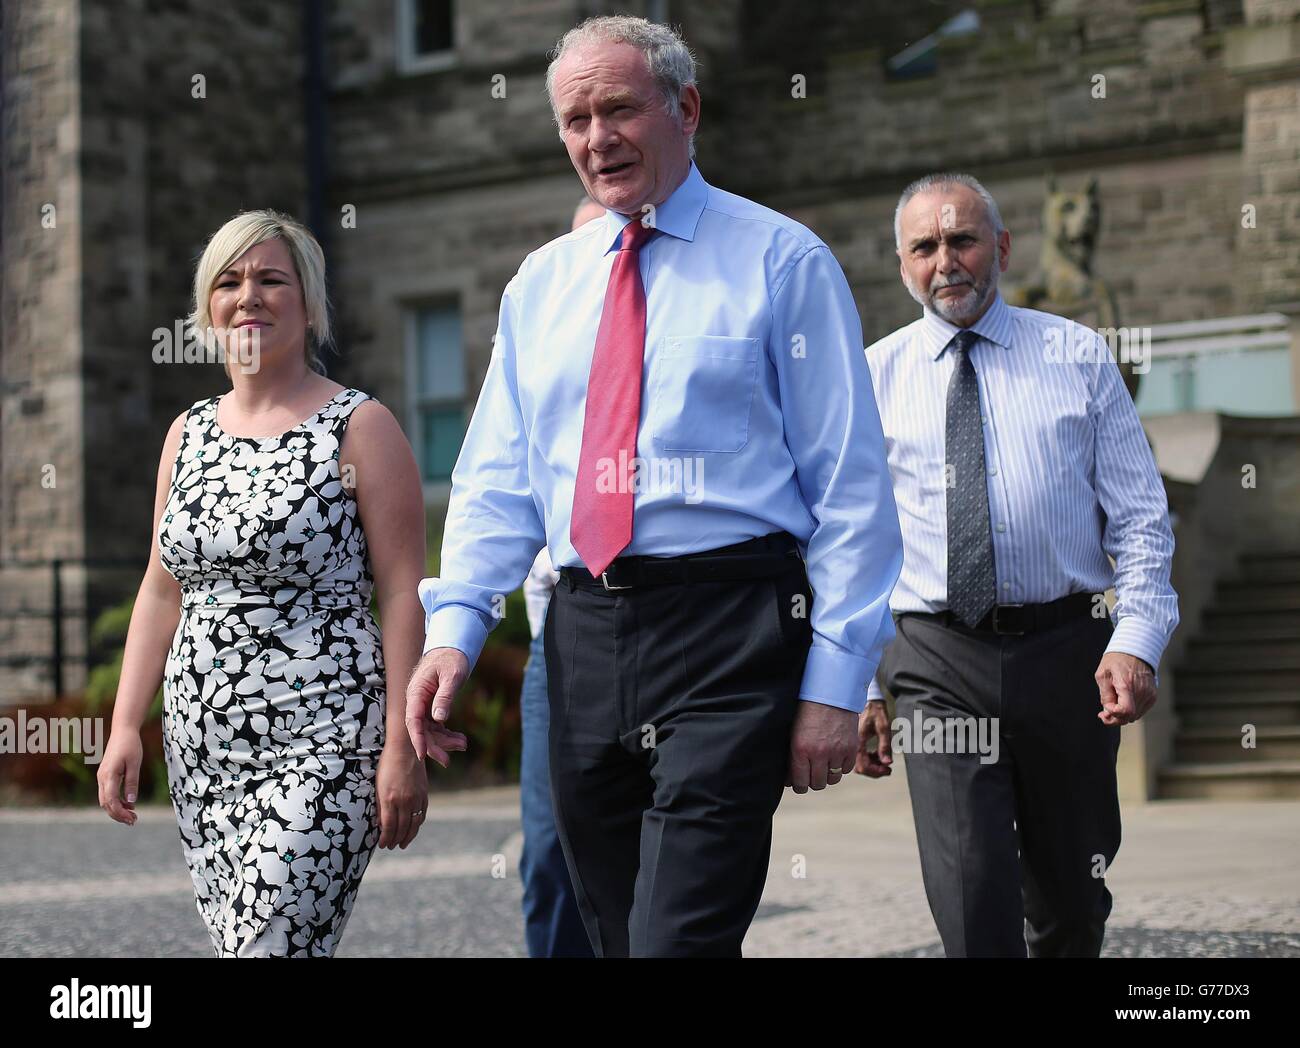 (De gauche à droite) Michelle O'Neill de Sinn Fein, Martin McGuinness et Sean Murray au château de Stormont après avoir rencontré la secrétaire d'Irlande du Nord, Theresa Villiers. Banque D'Images